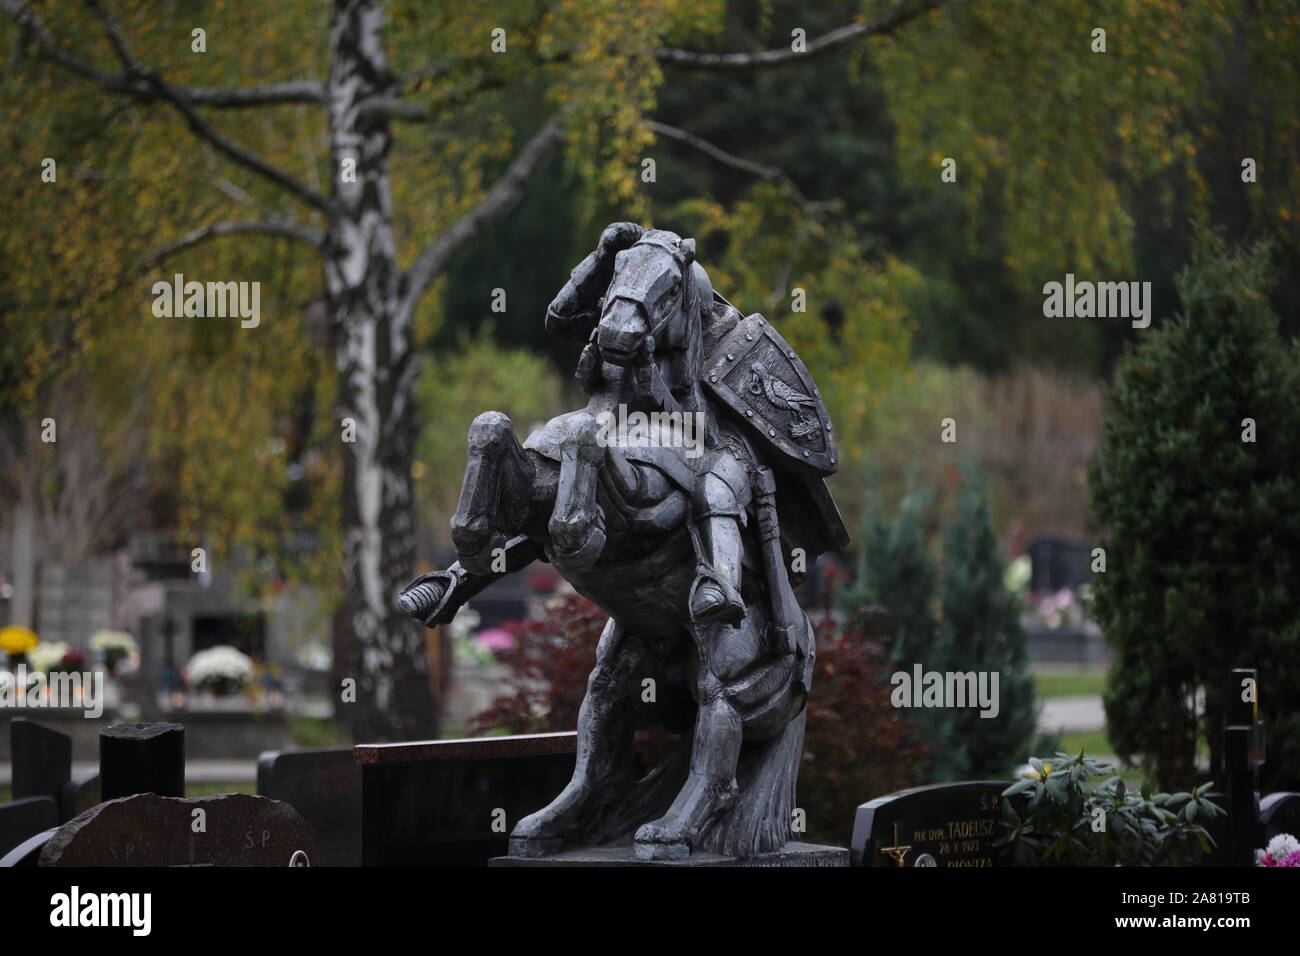 Cimetière, statue d'un chevalier sur un cheval Banque D'Images